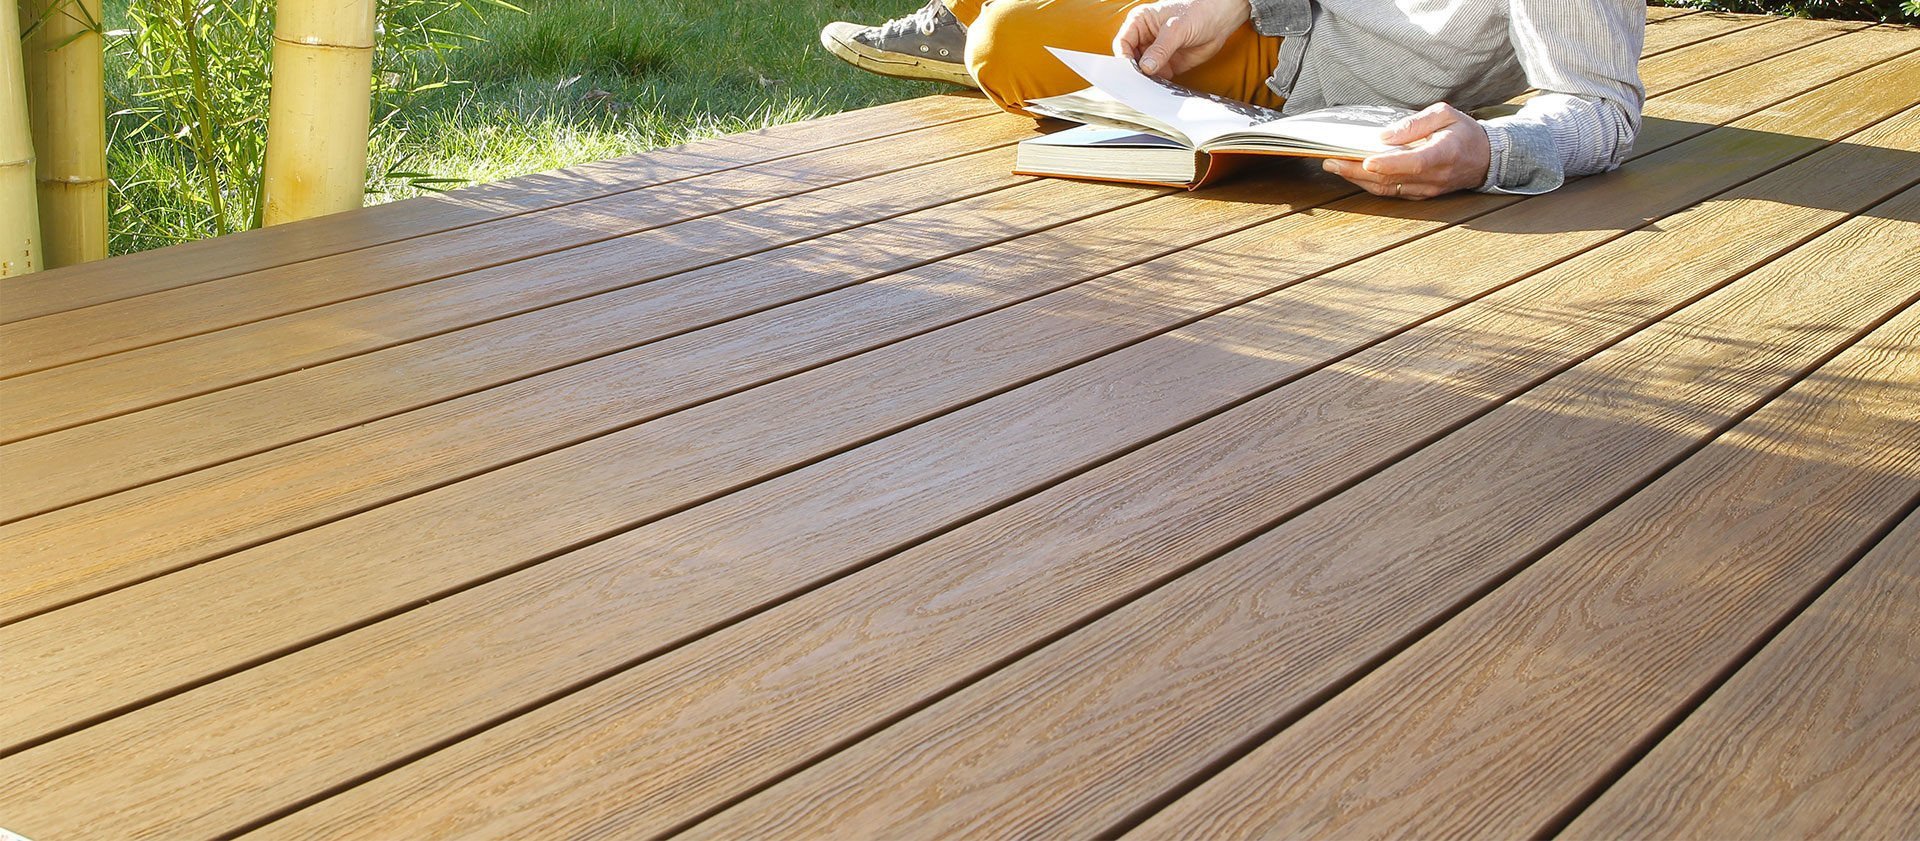 Terrasse bois : lames en bois et composite - Structure et